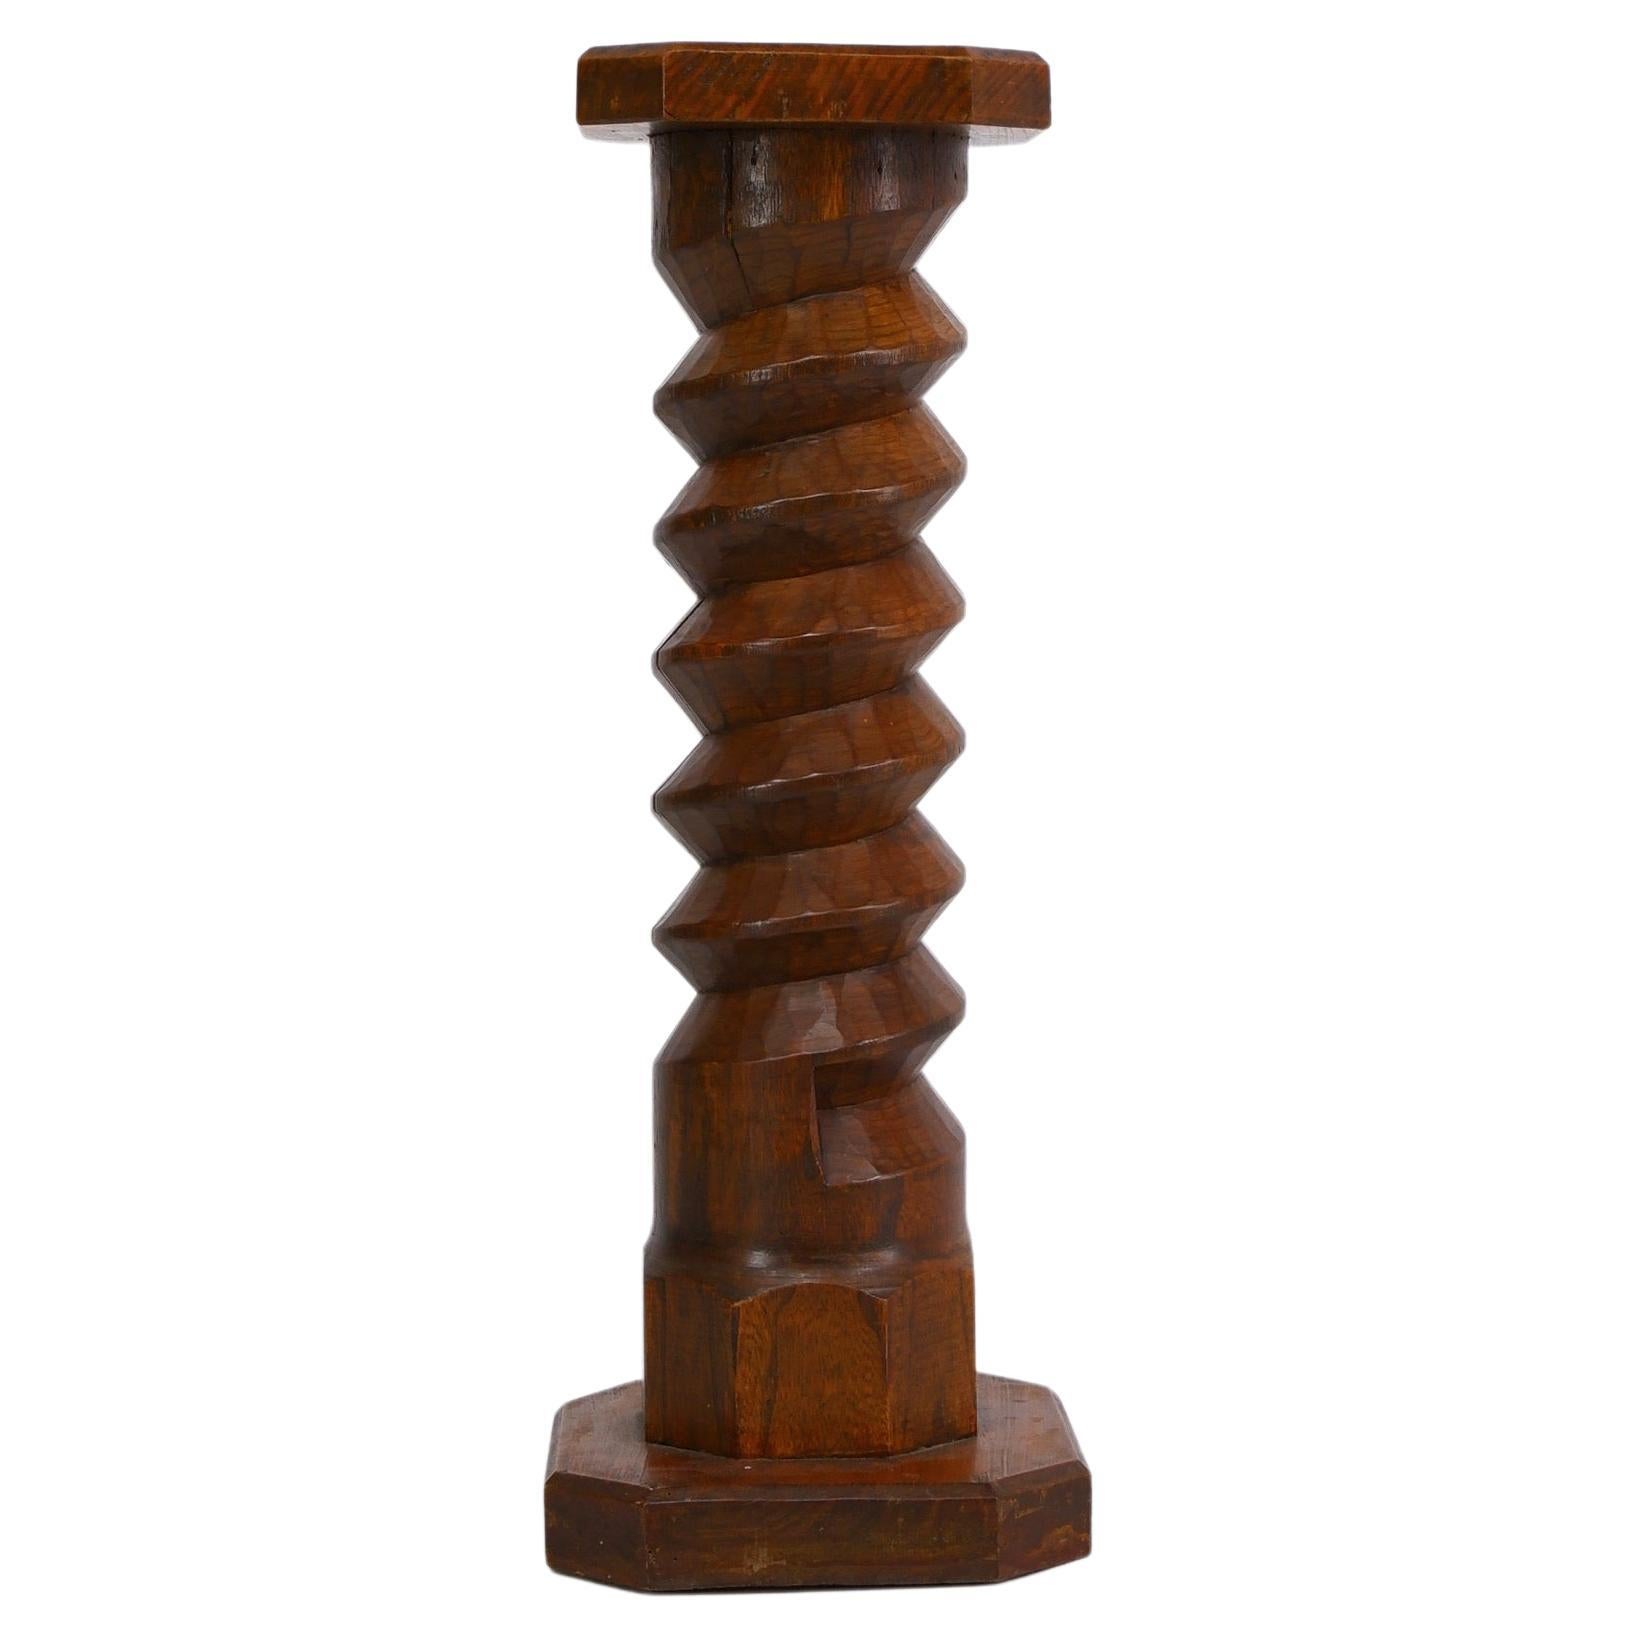 Vintage Twisted Wooden Column Pedestal